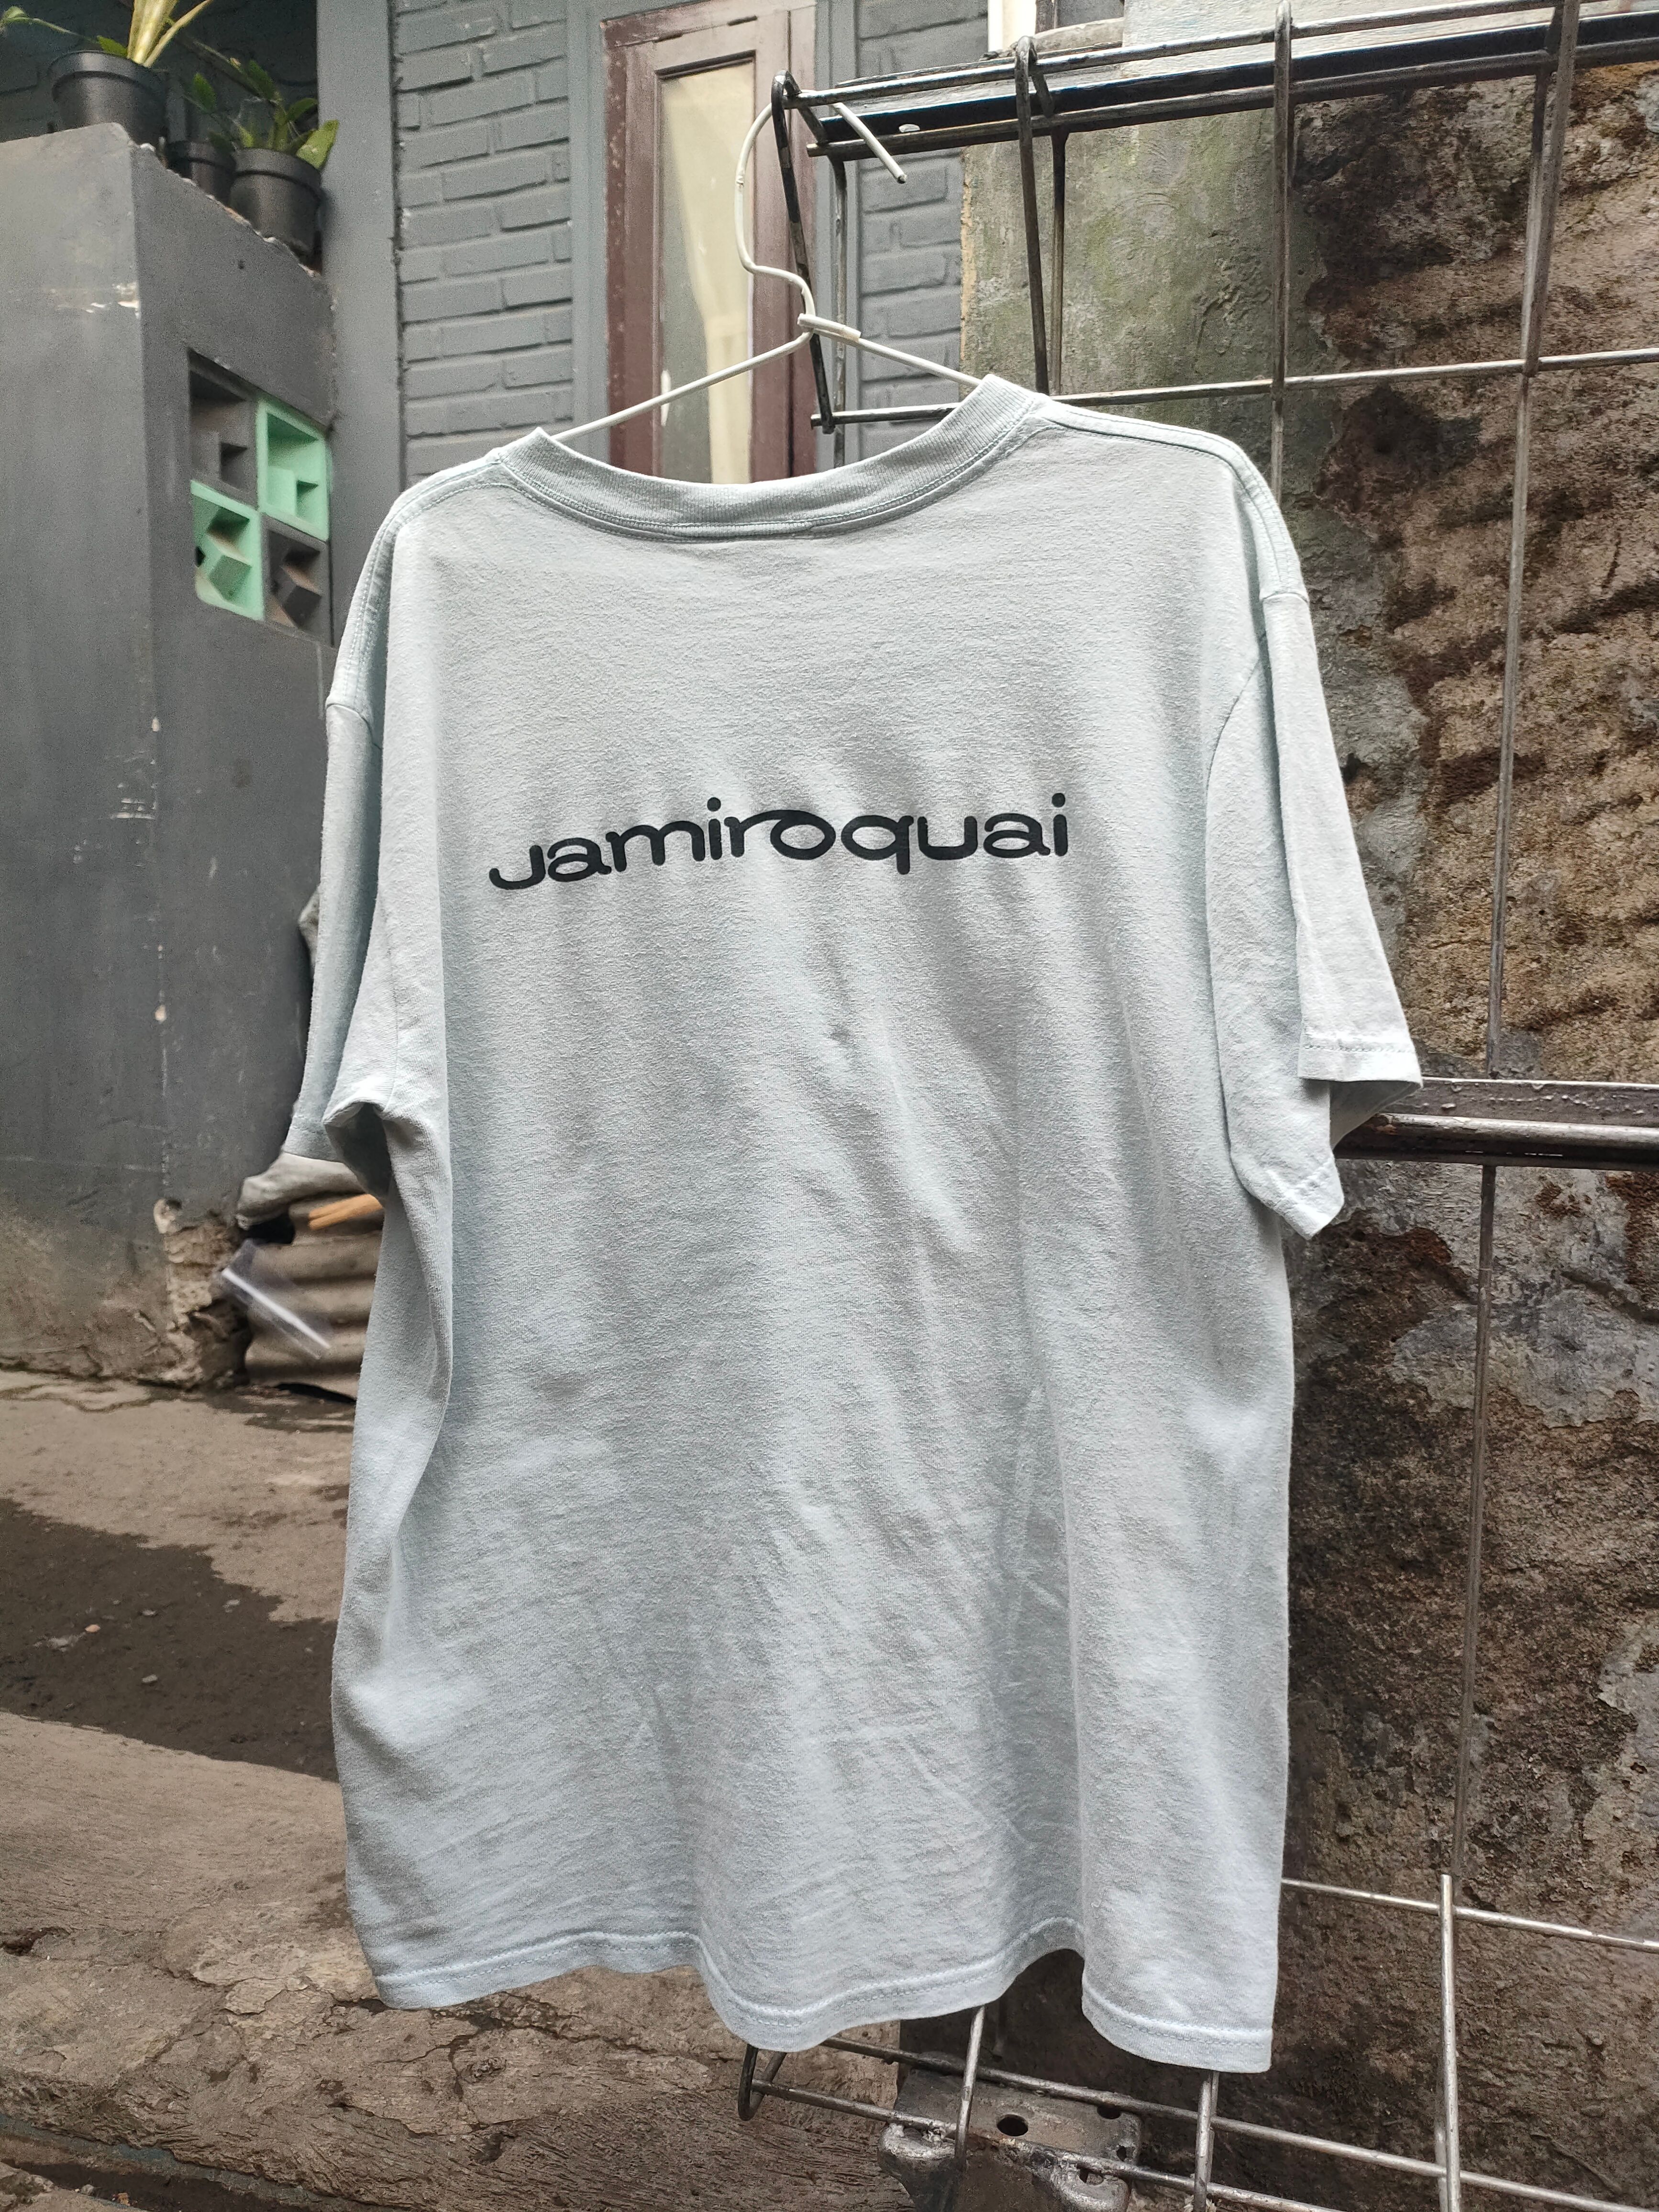 Vintage - Jamiroquai - Band Tshirt - 2